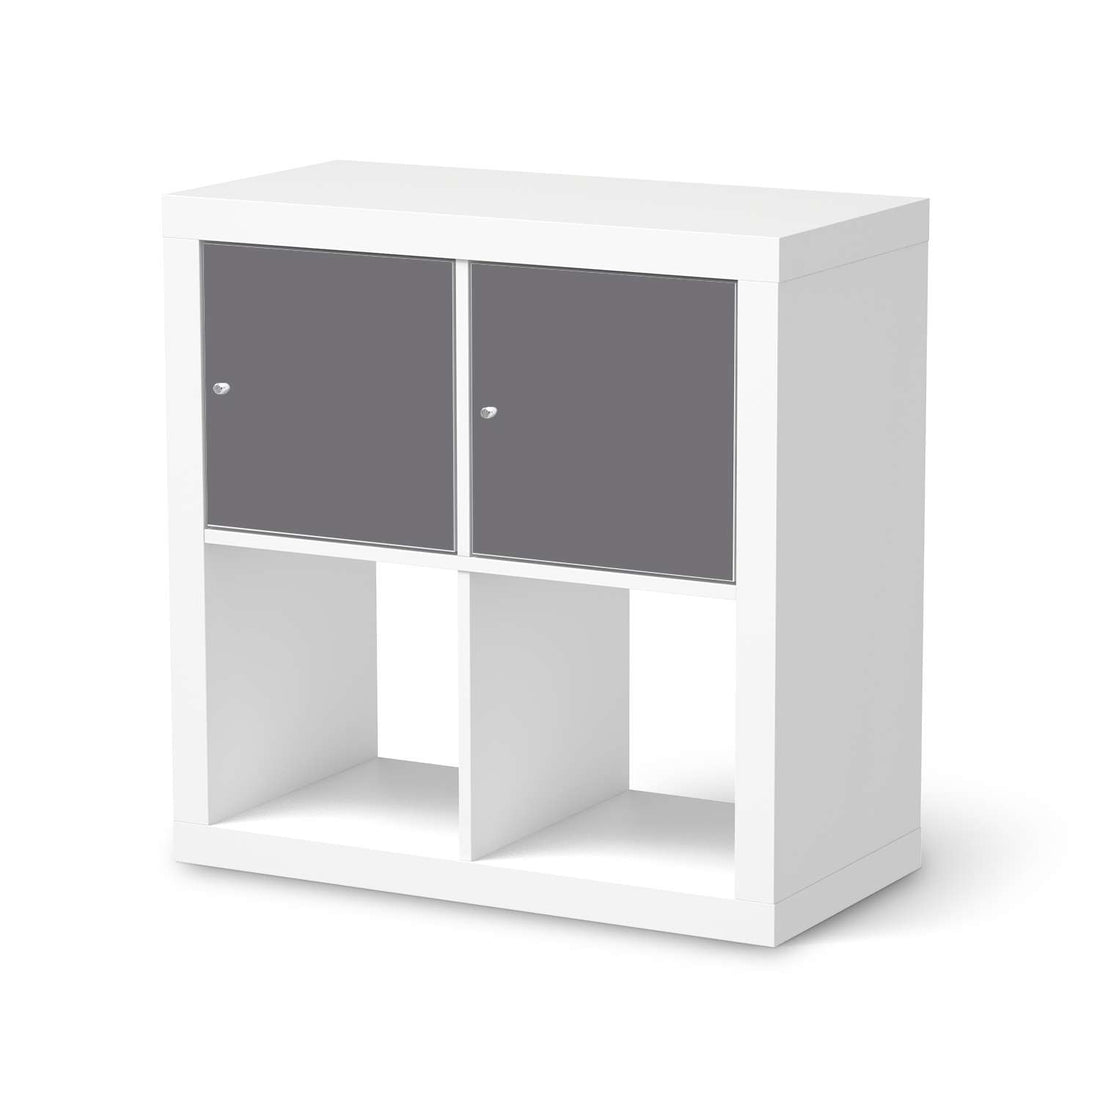 Möbel Klebefolie Grau Light - IKEA Expedit Regal 2 Türen Quer  - weiss